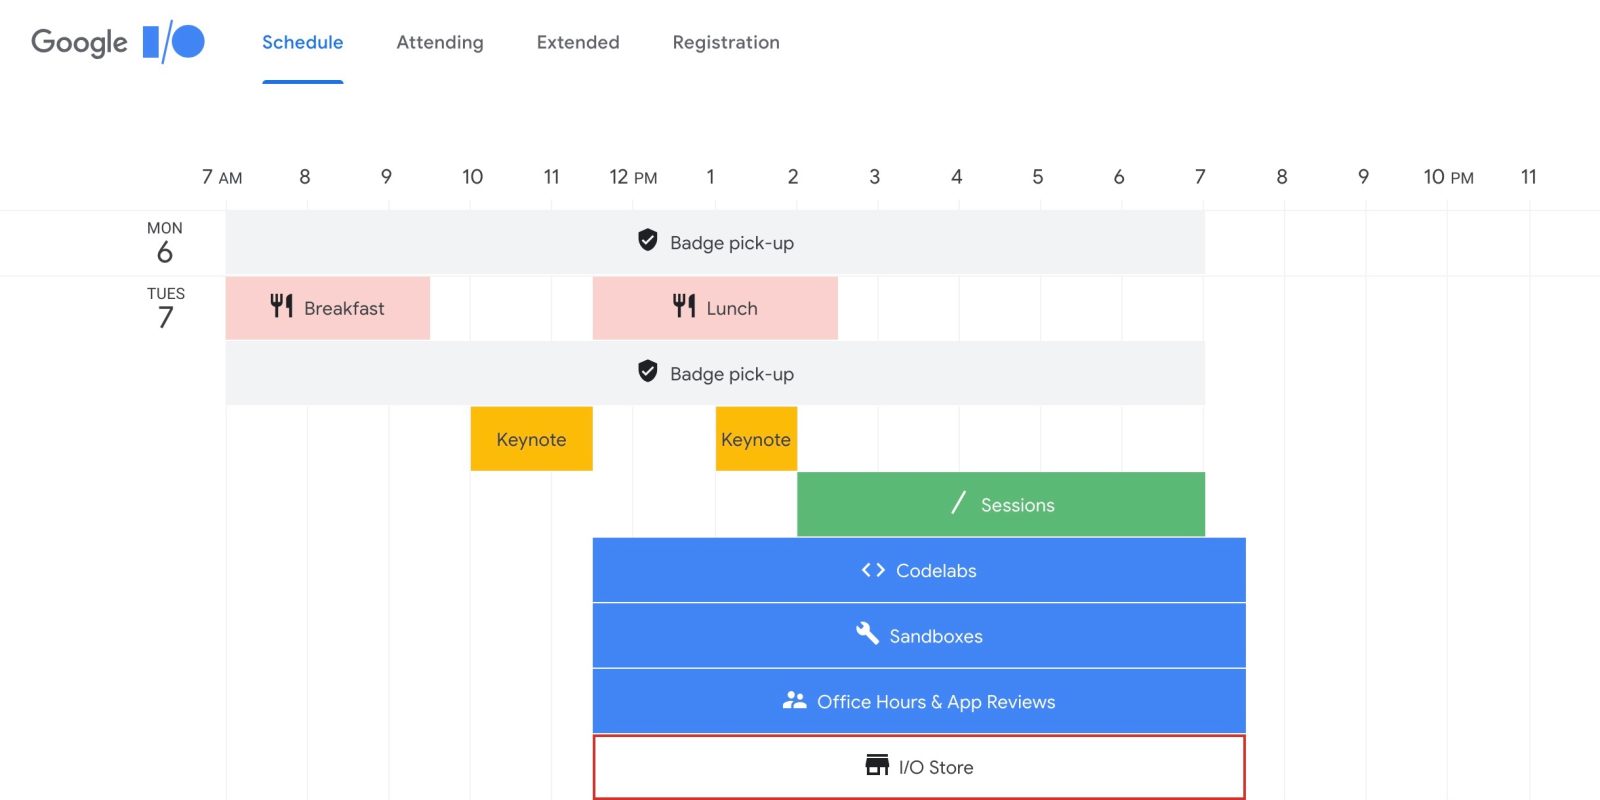 Google I/O 2019 schedule